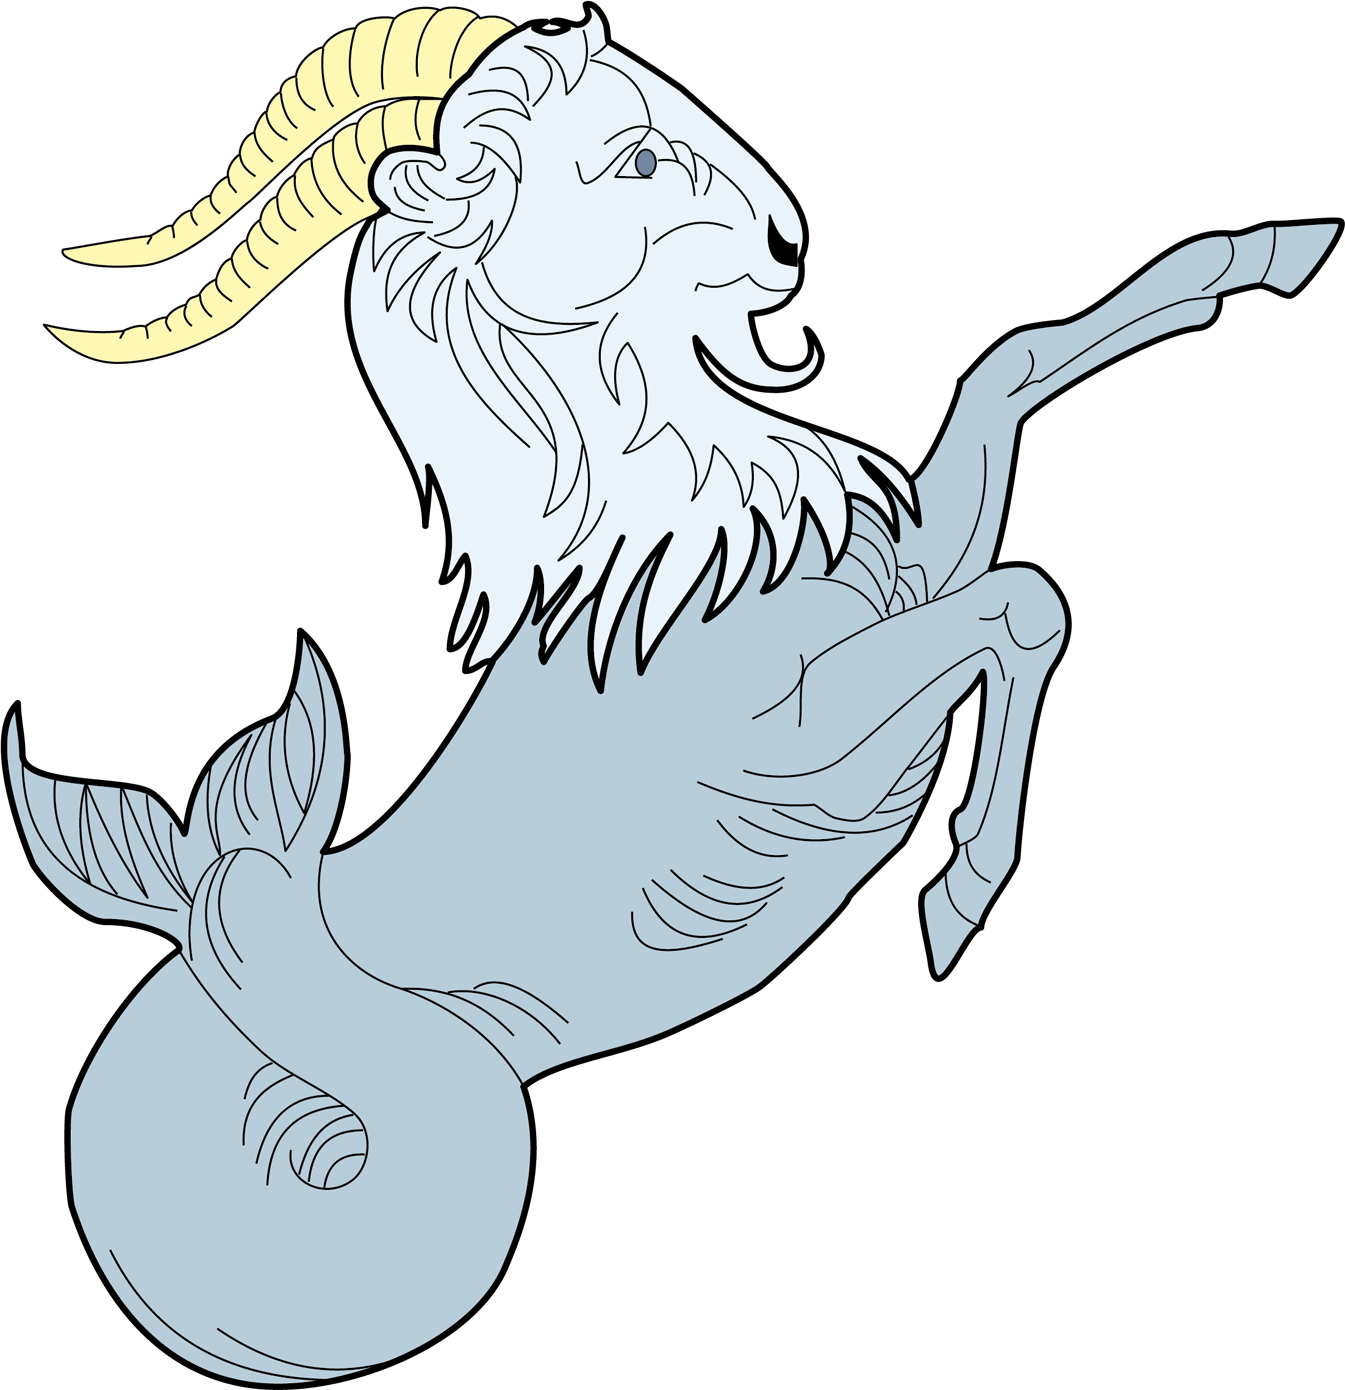 Водолей год козы. Каприкорн мифология. Козерог знак зодиака символ. Козерог с рыбьим хвостом.